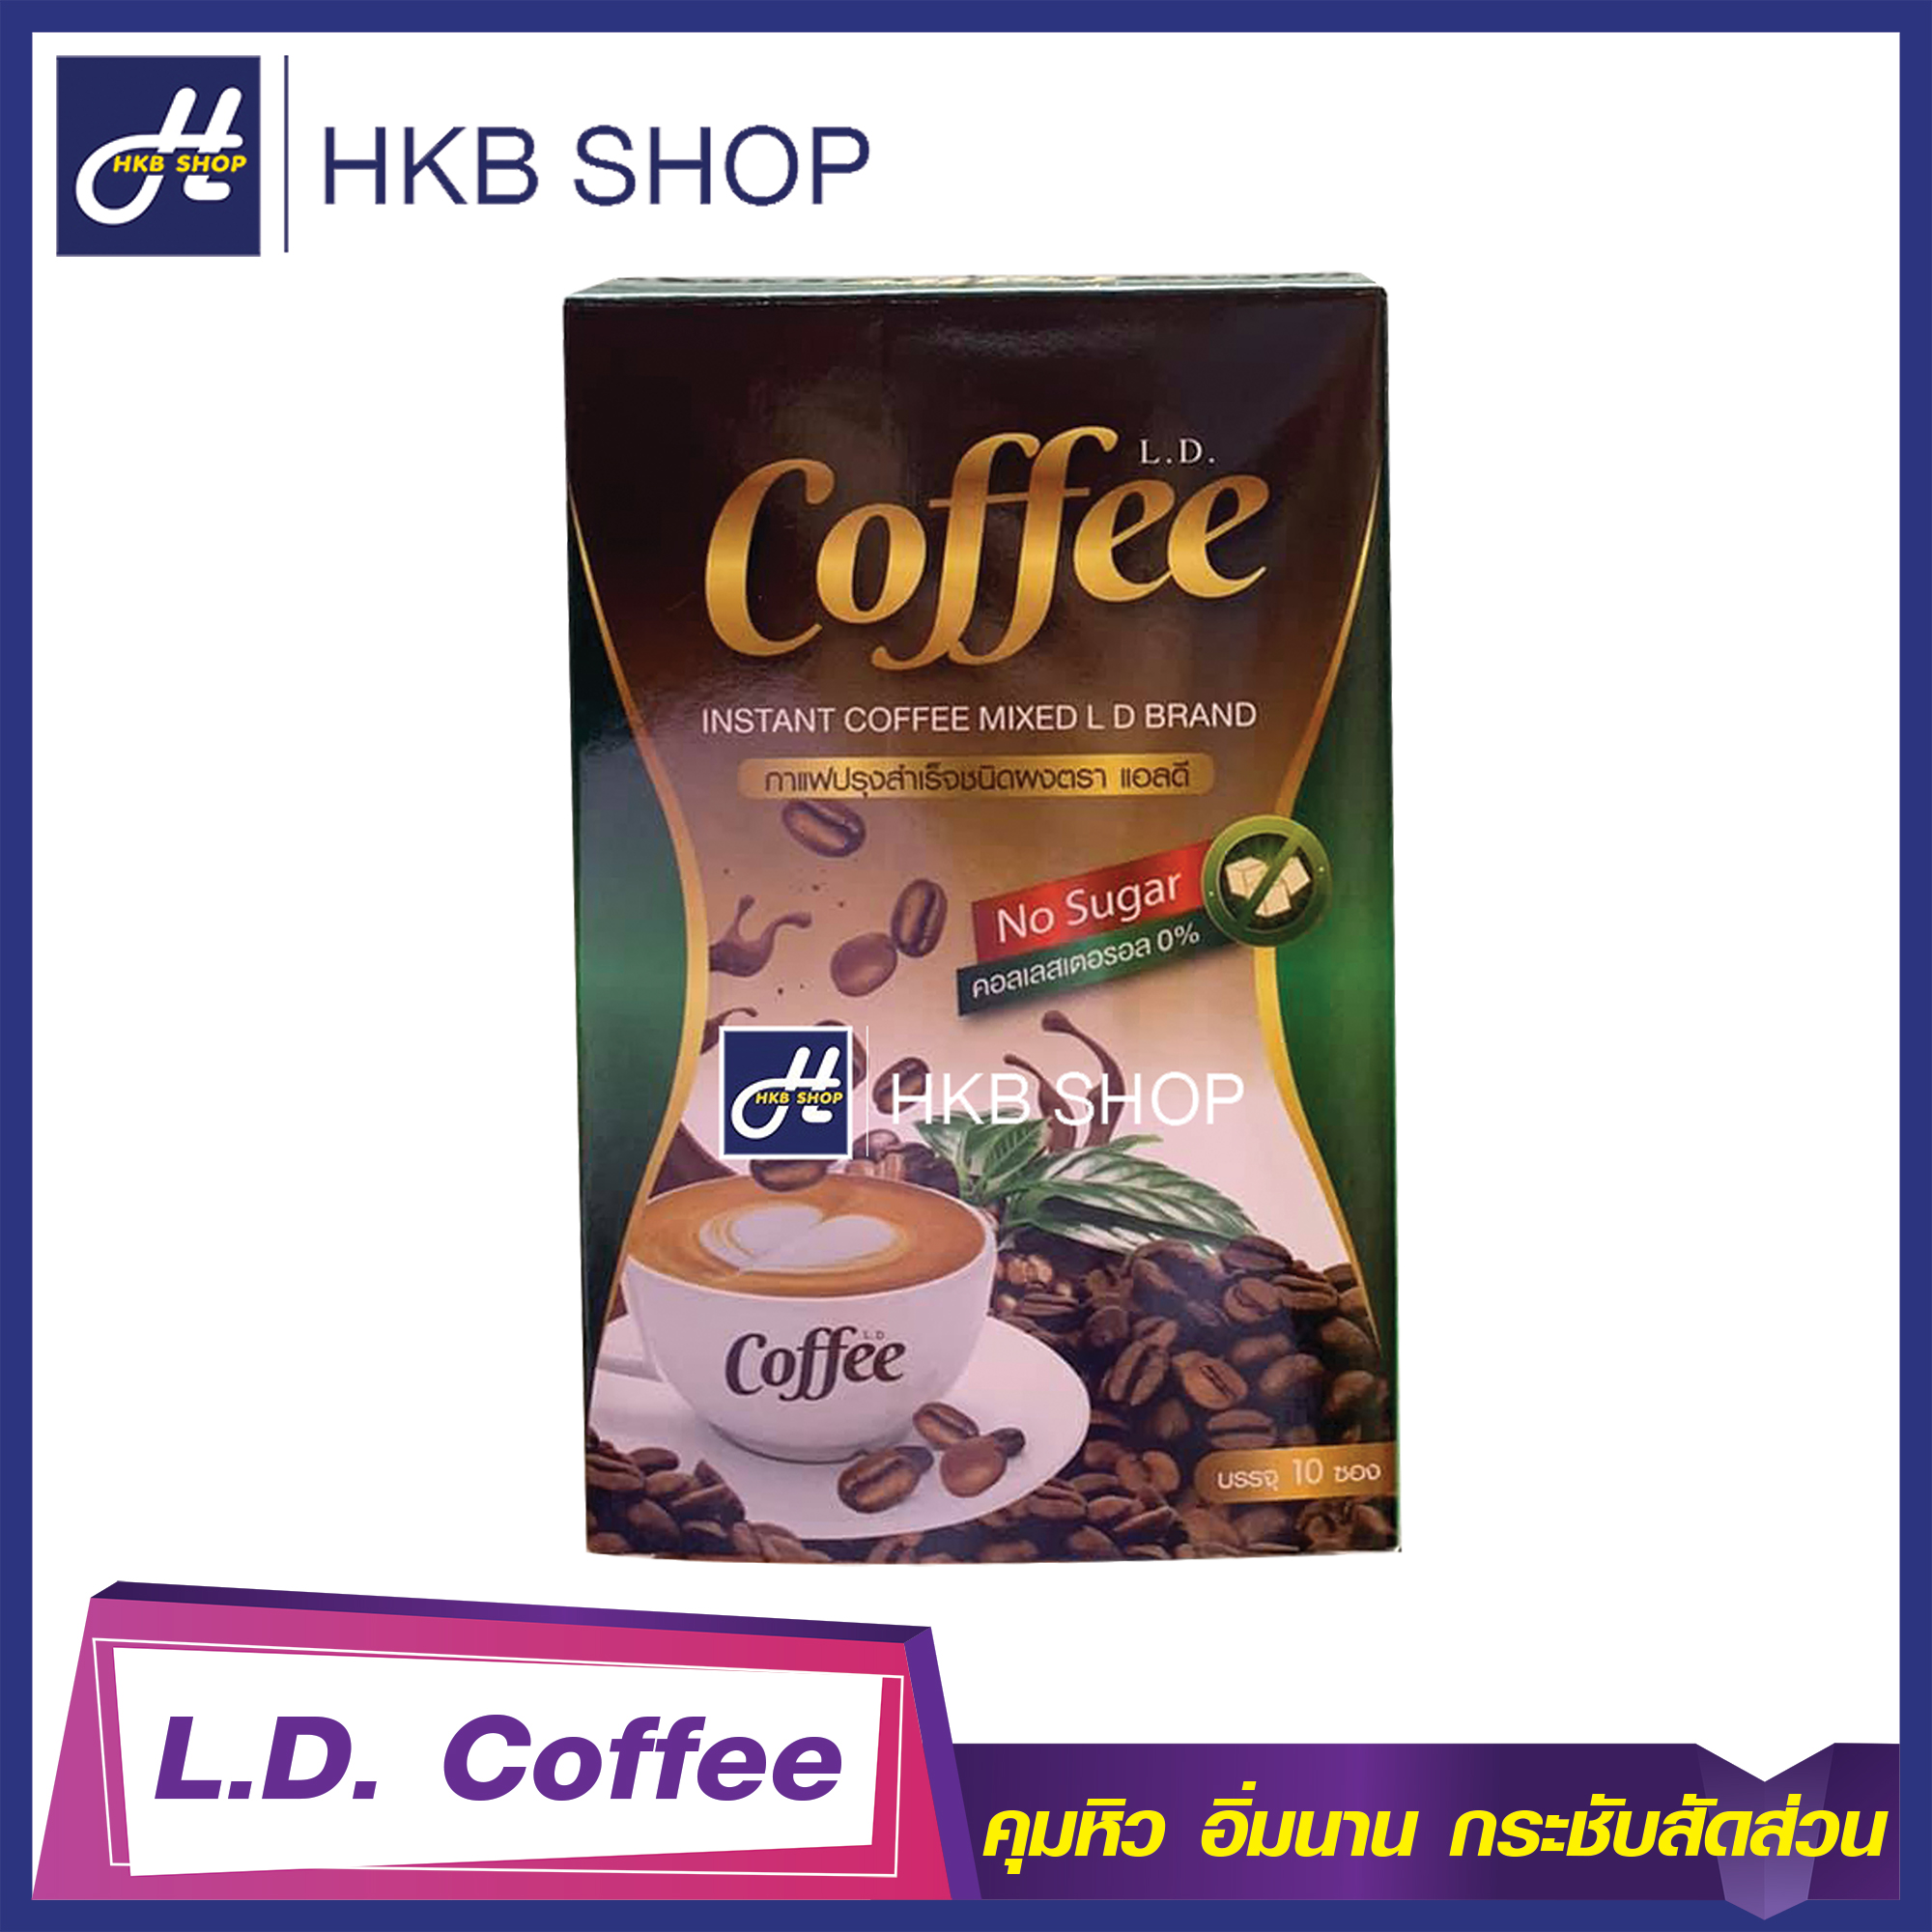 ⚡️1กล่อง⚡️ L.D. Coffee แอลดี คอฟฟี่ กาแฟแอลดี By HKB SHOP